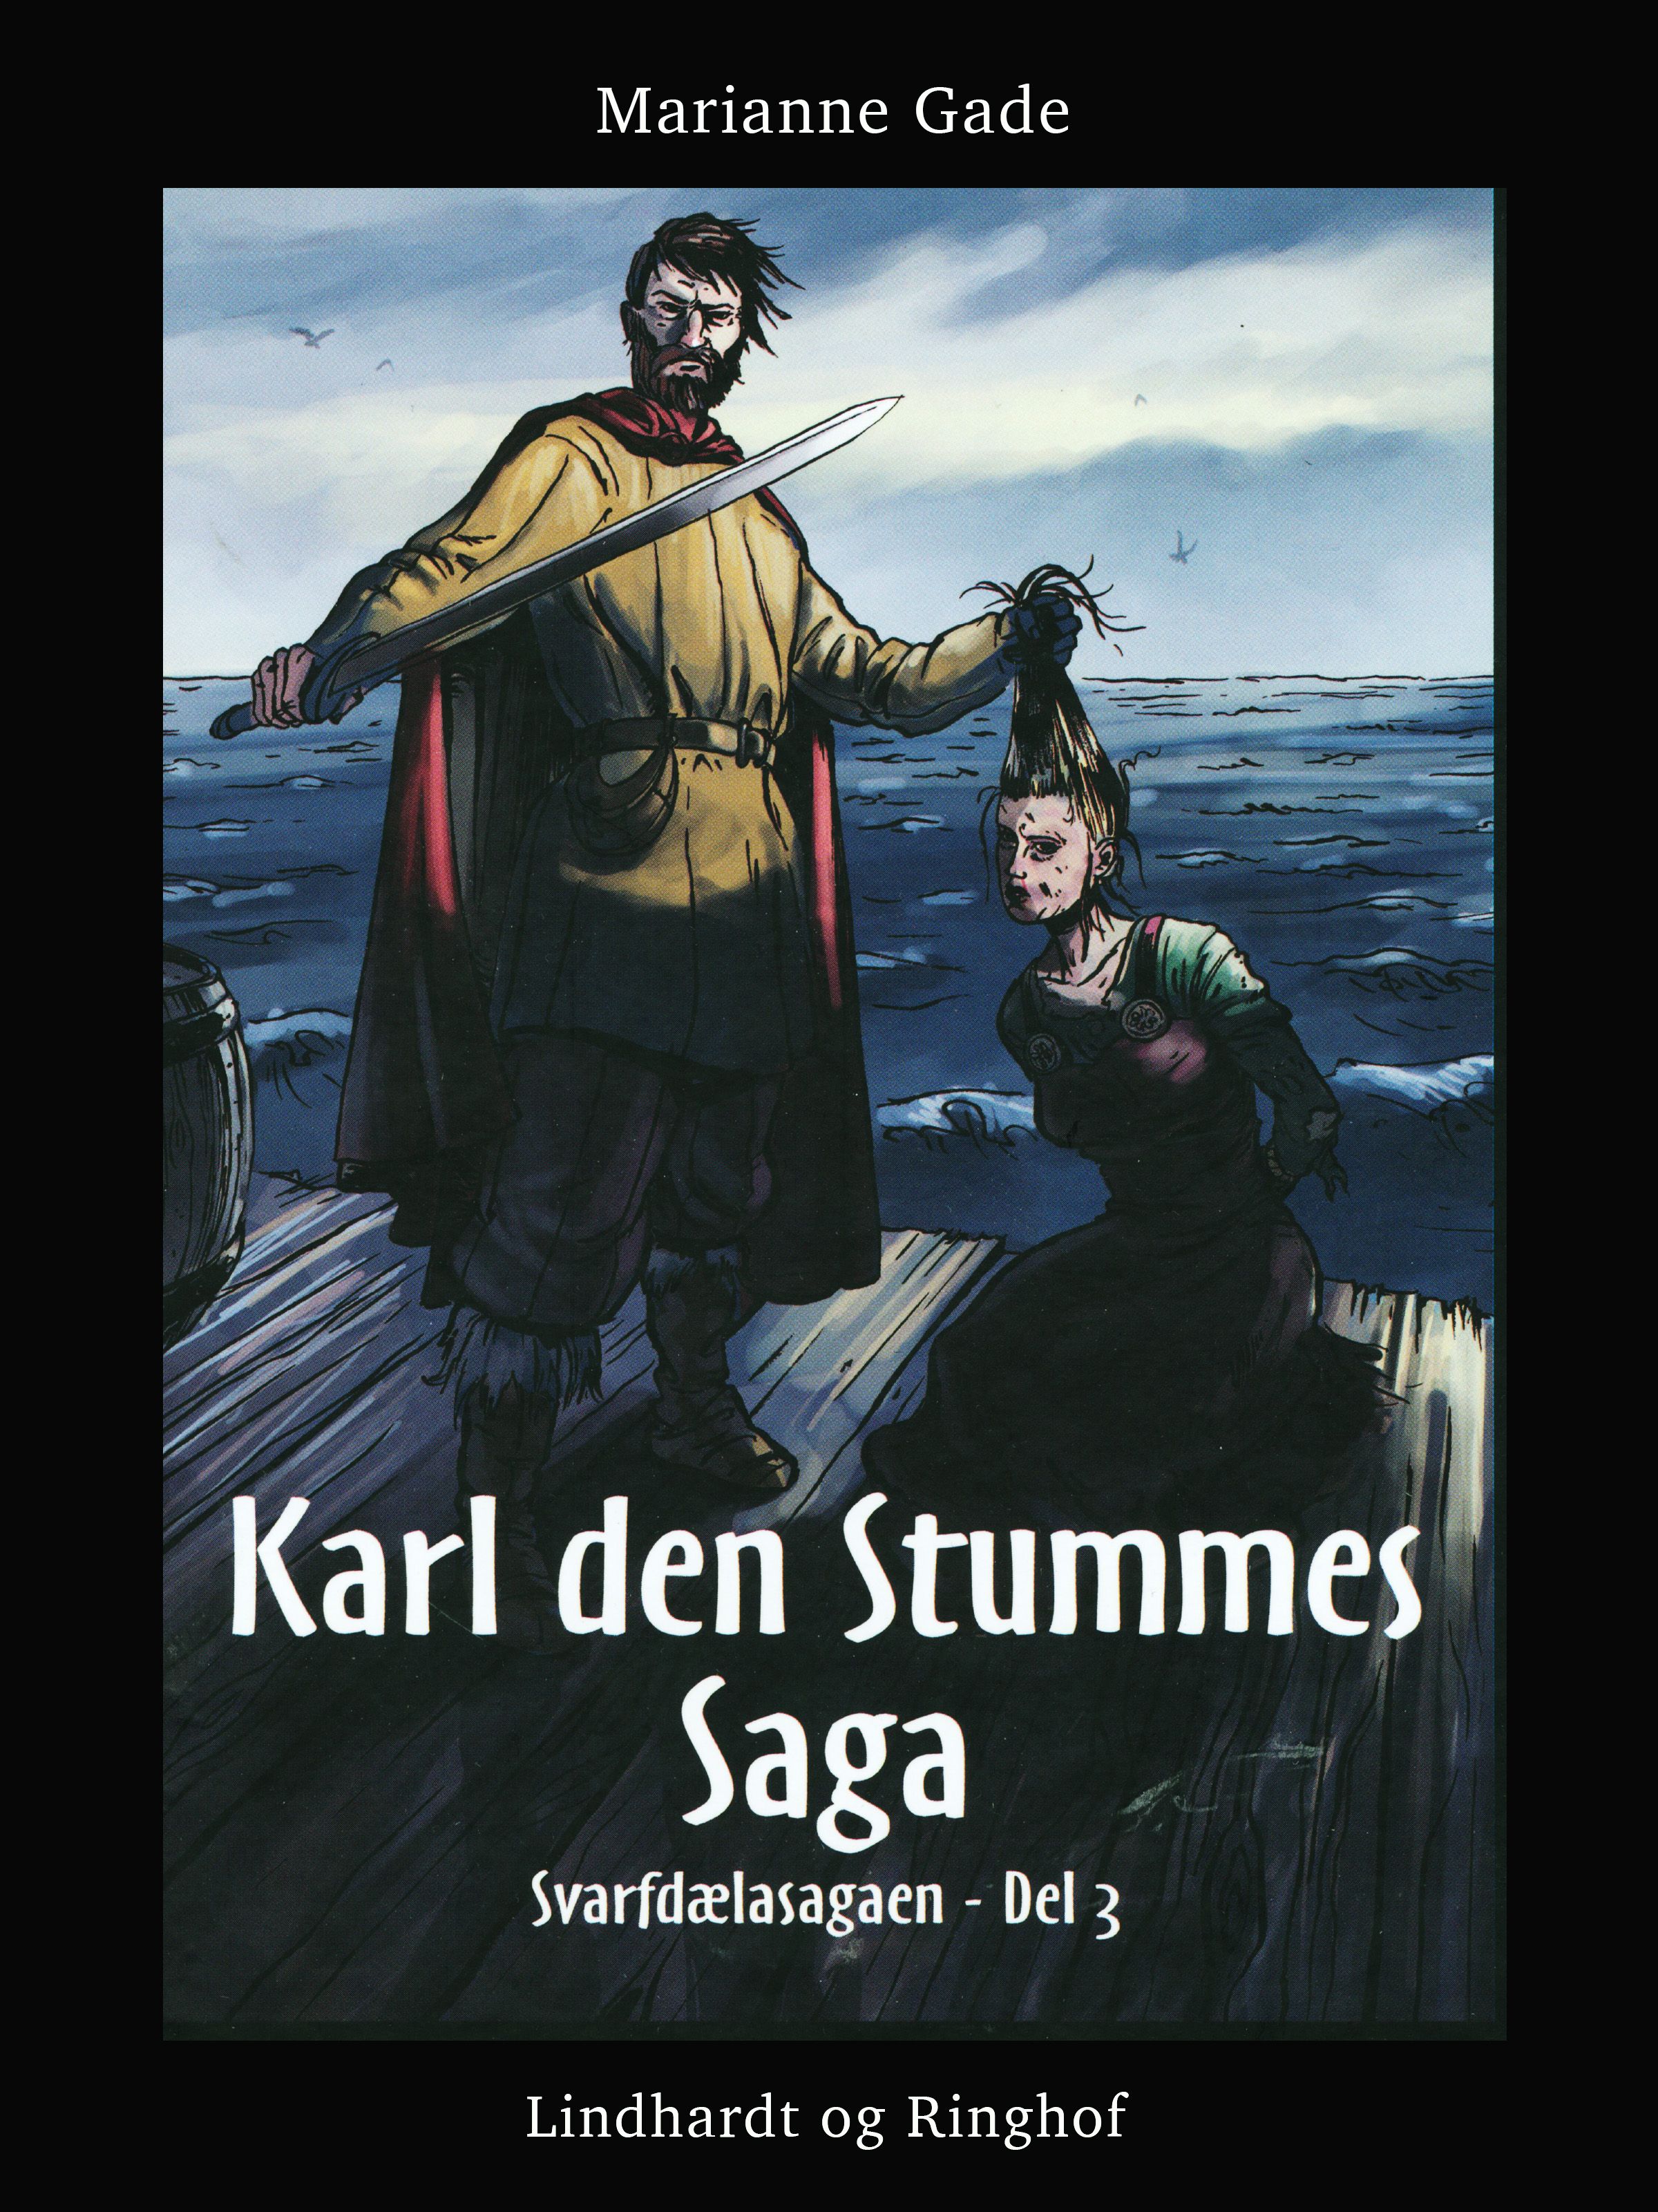 Karl den Stummes saga, eBook by Marianne Gade